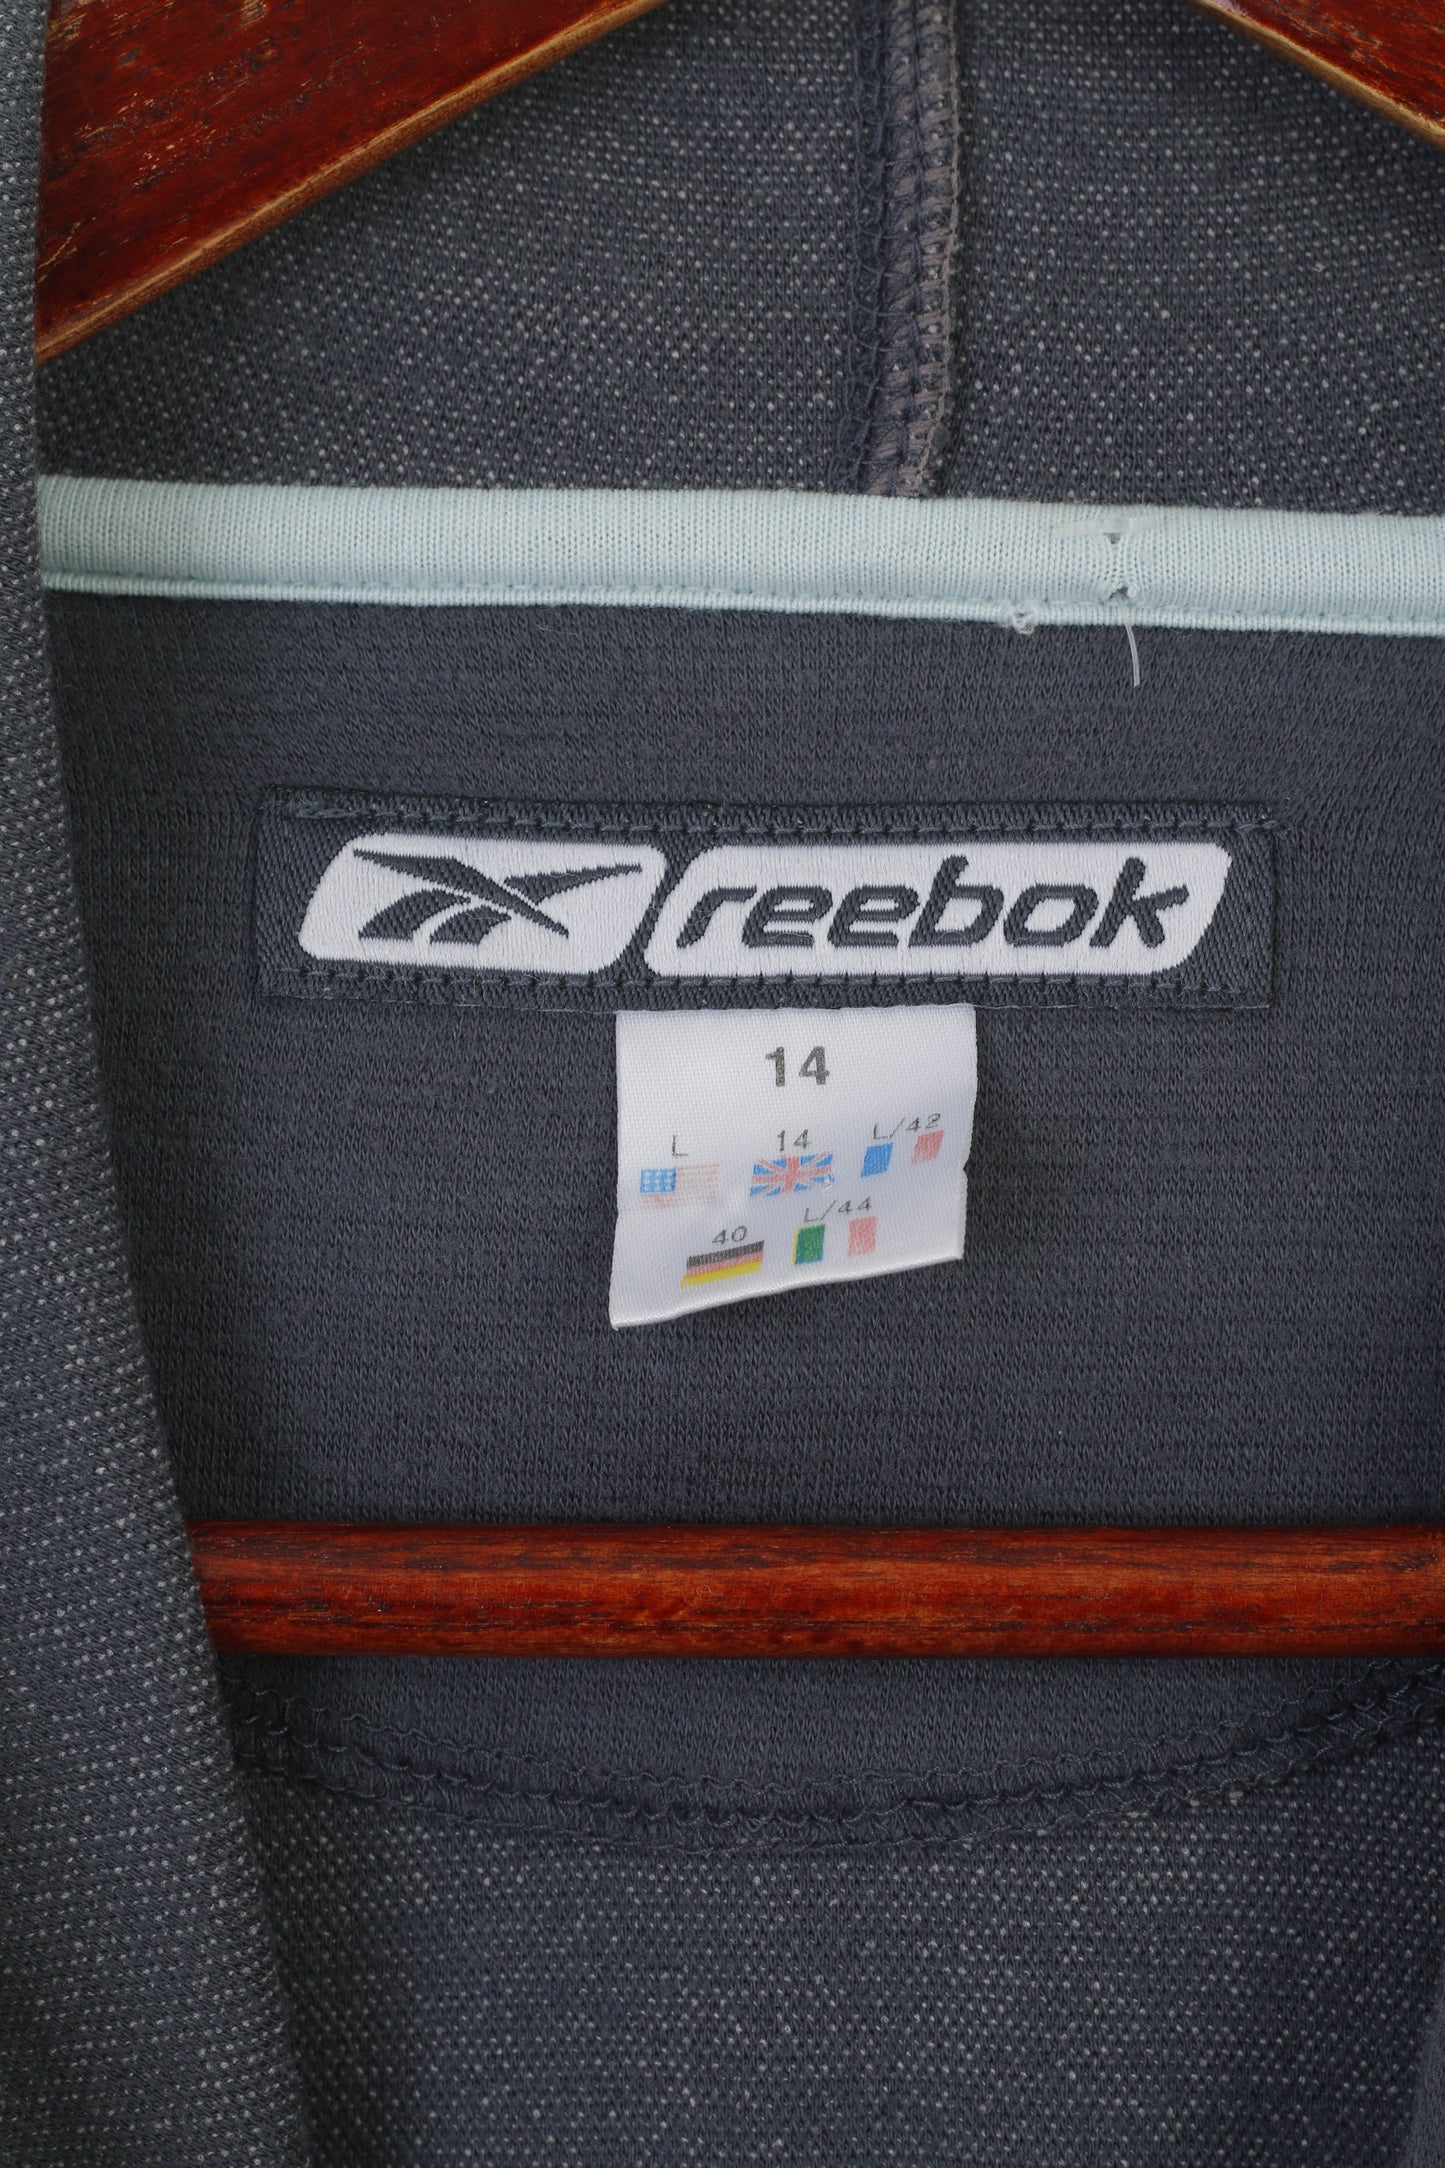 Reebok Women 14 M Sweatshirt Gray Hooded Vintage Sportswear Active Top